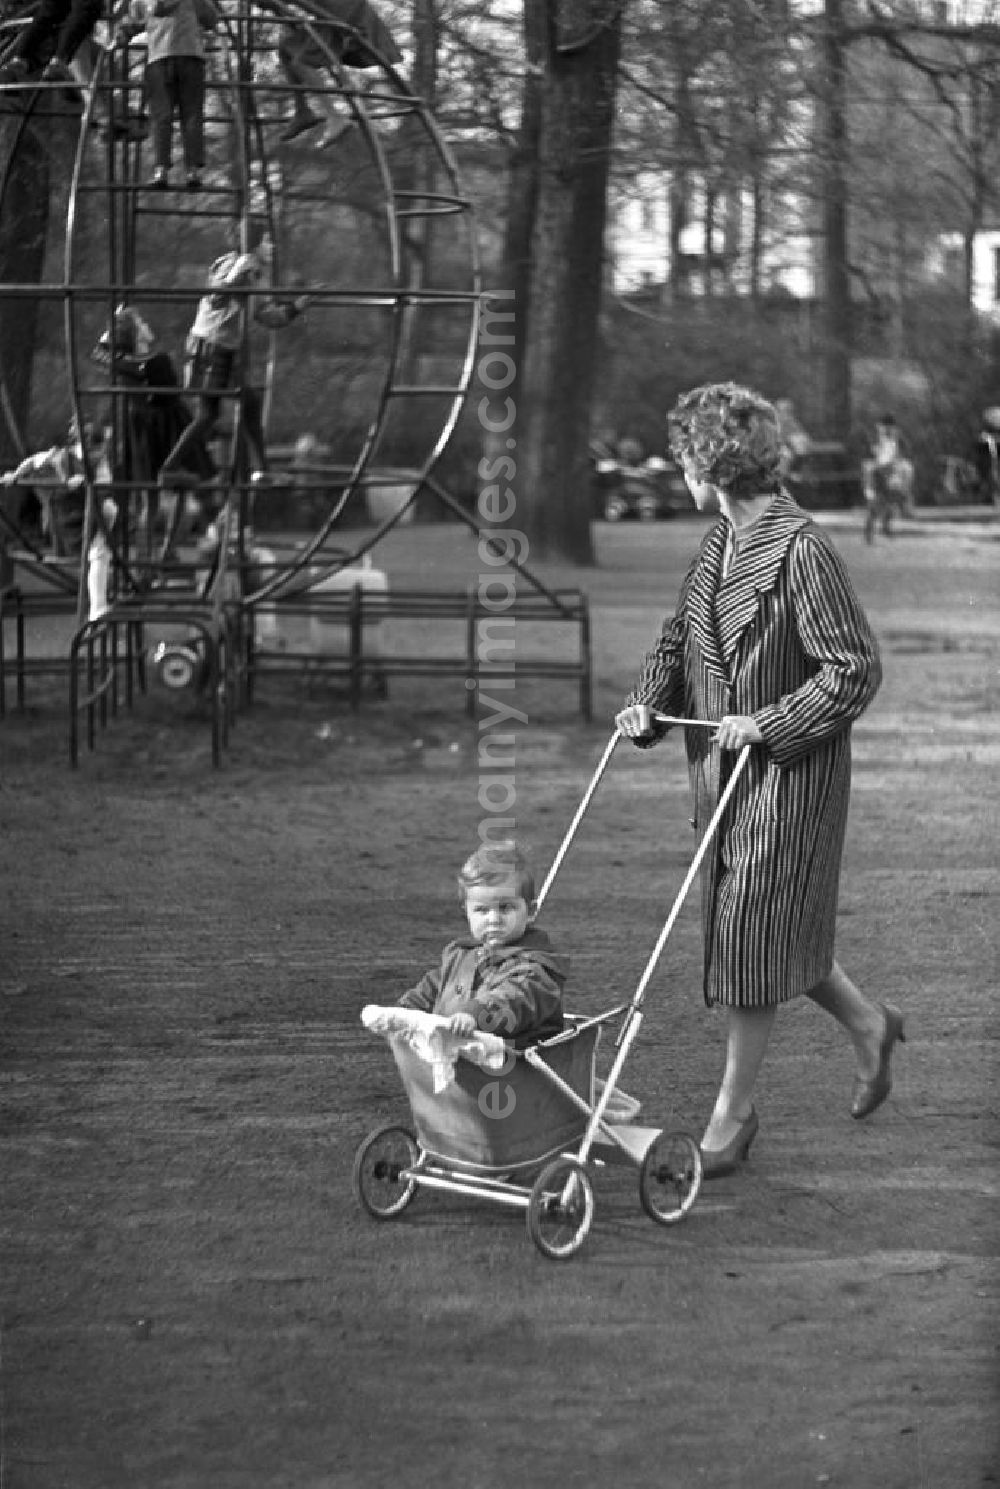 GDR picture archive: Leipzig - Eine Frau geht mit ihrem Kind in einem Sport-Kinderwagen Marke Eigenbau im Clara-Zetkin-Park in Leipzig spazieren, im Hintergrund spielen Kinder auf einem Klettergerüst.